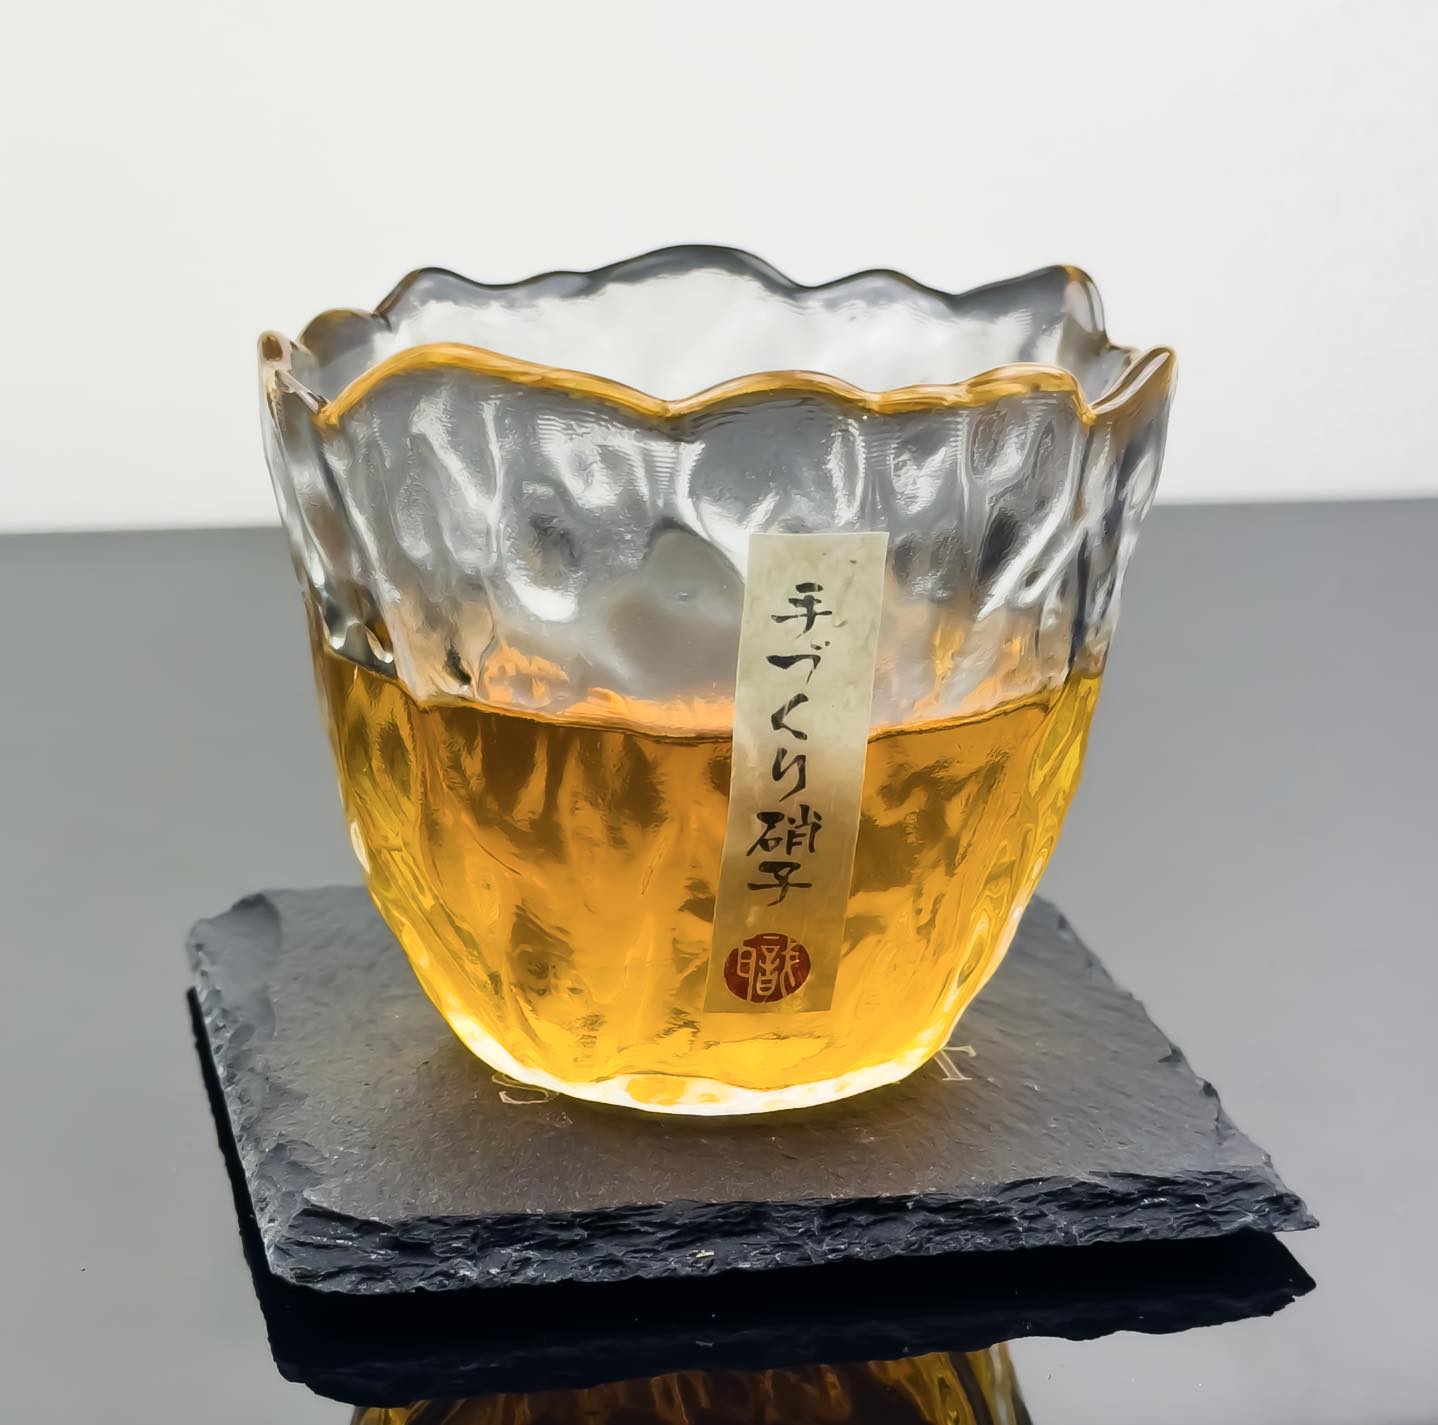 Japanese Sakura Glass - Solkatt Designs 